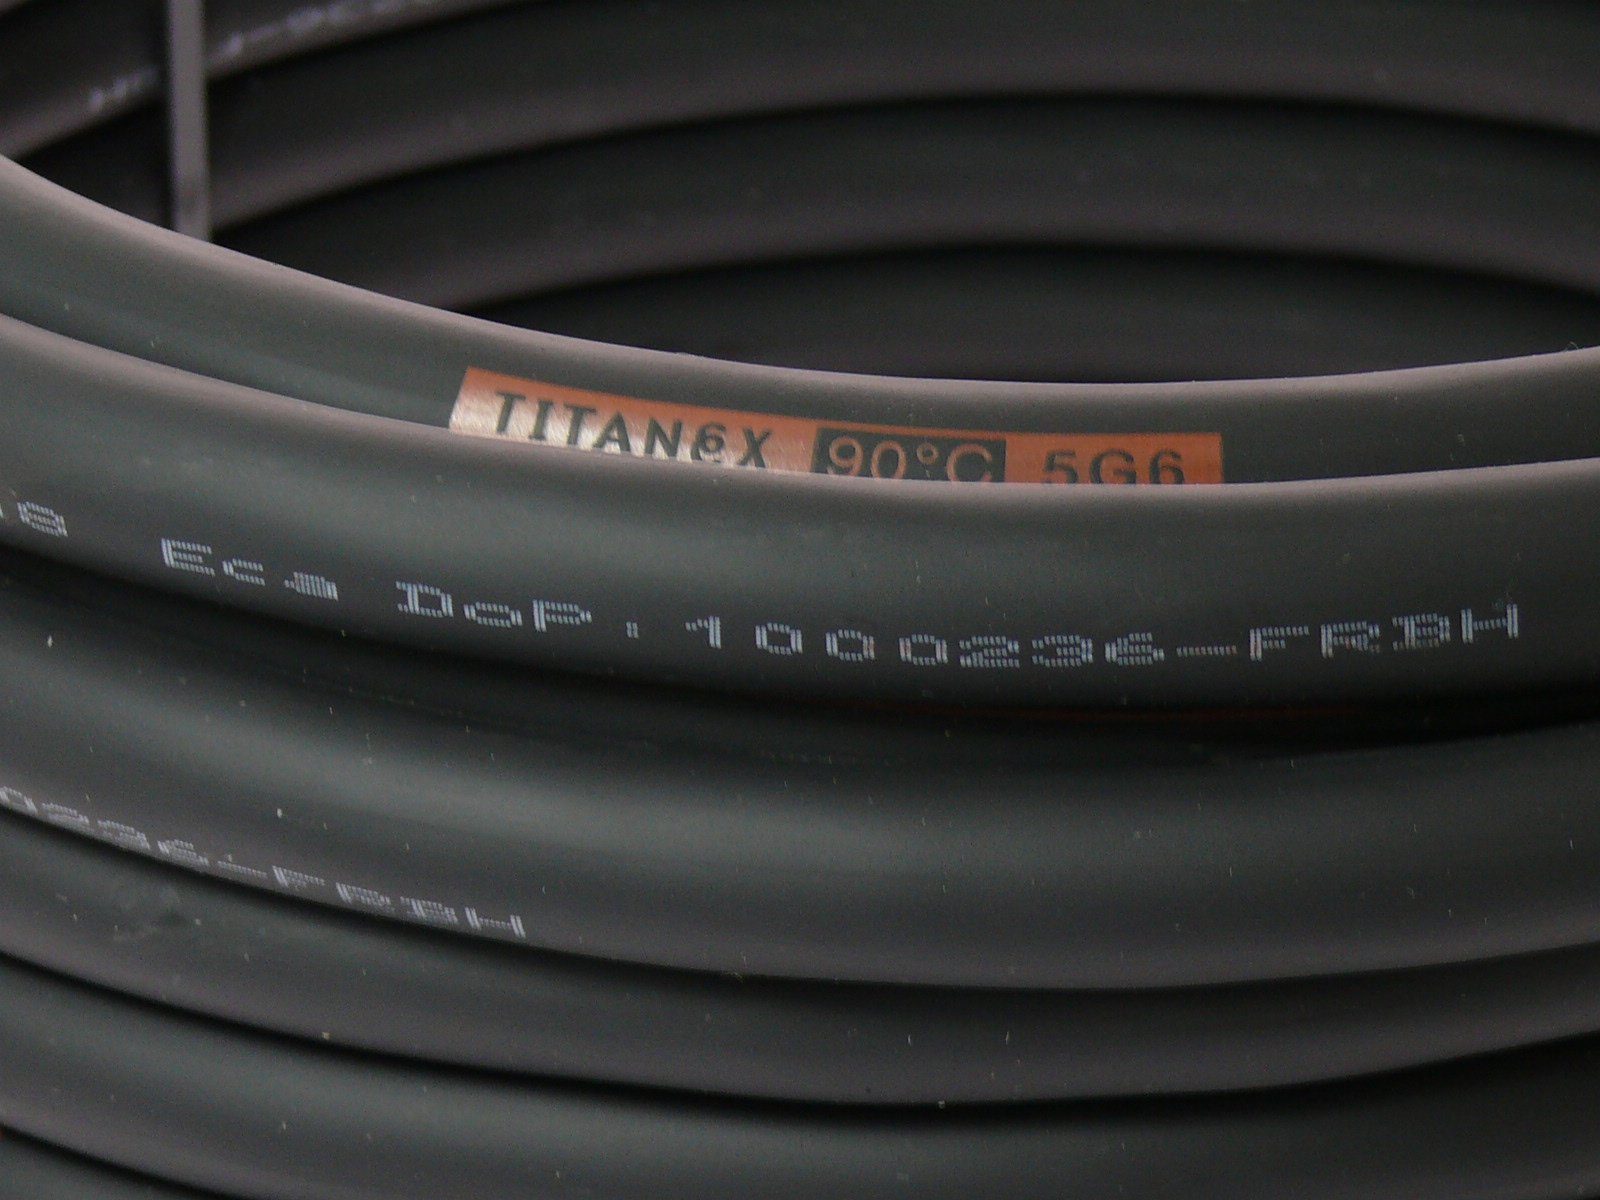 5x6 TITANEX 5G6 5m Elektro-Kabel, Gummischlauchleitung (500 Titanex cm) H07RN-F